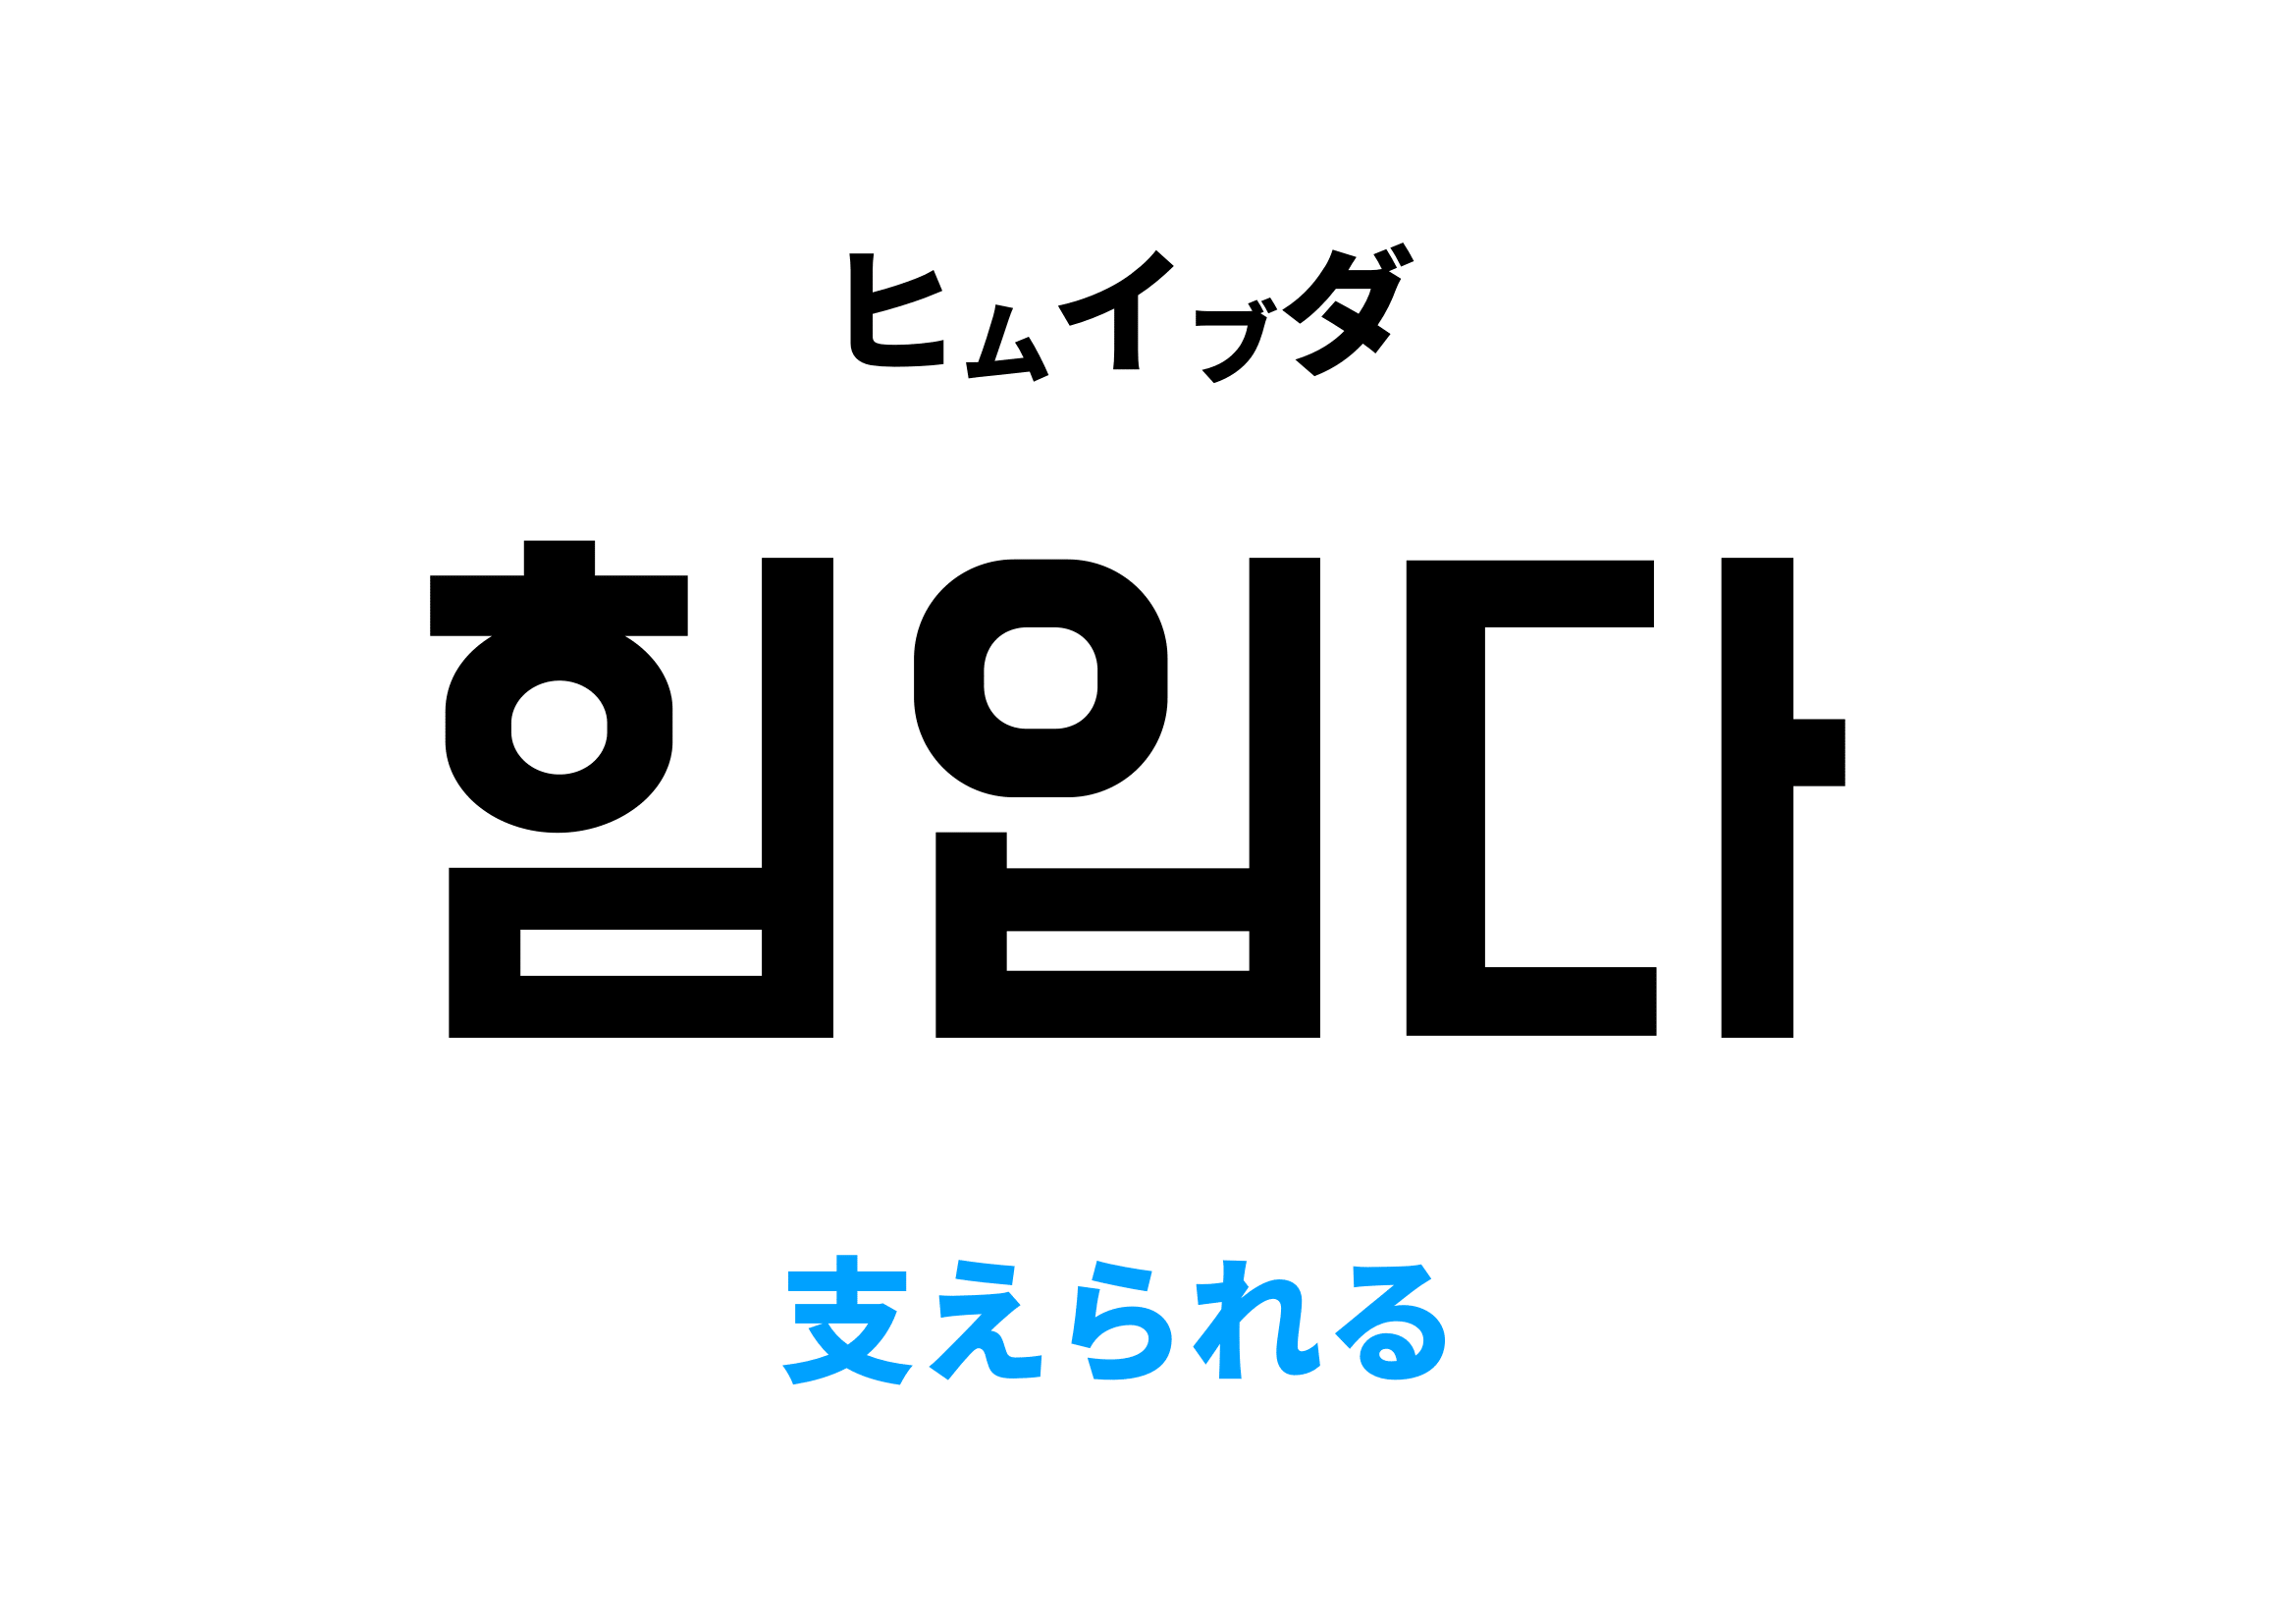 韓国語で支えられる,힘입다の意味